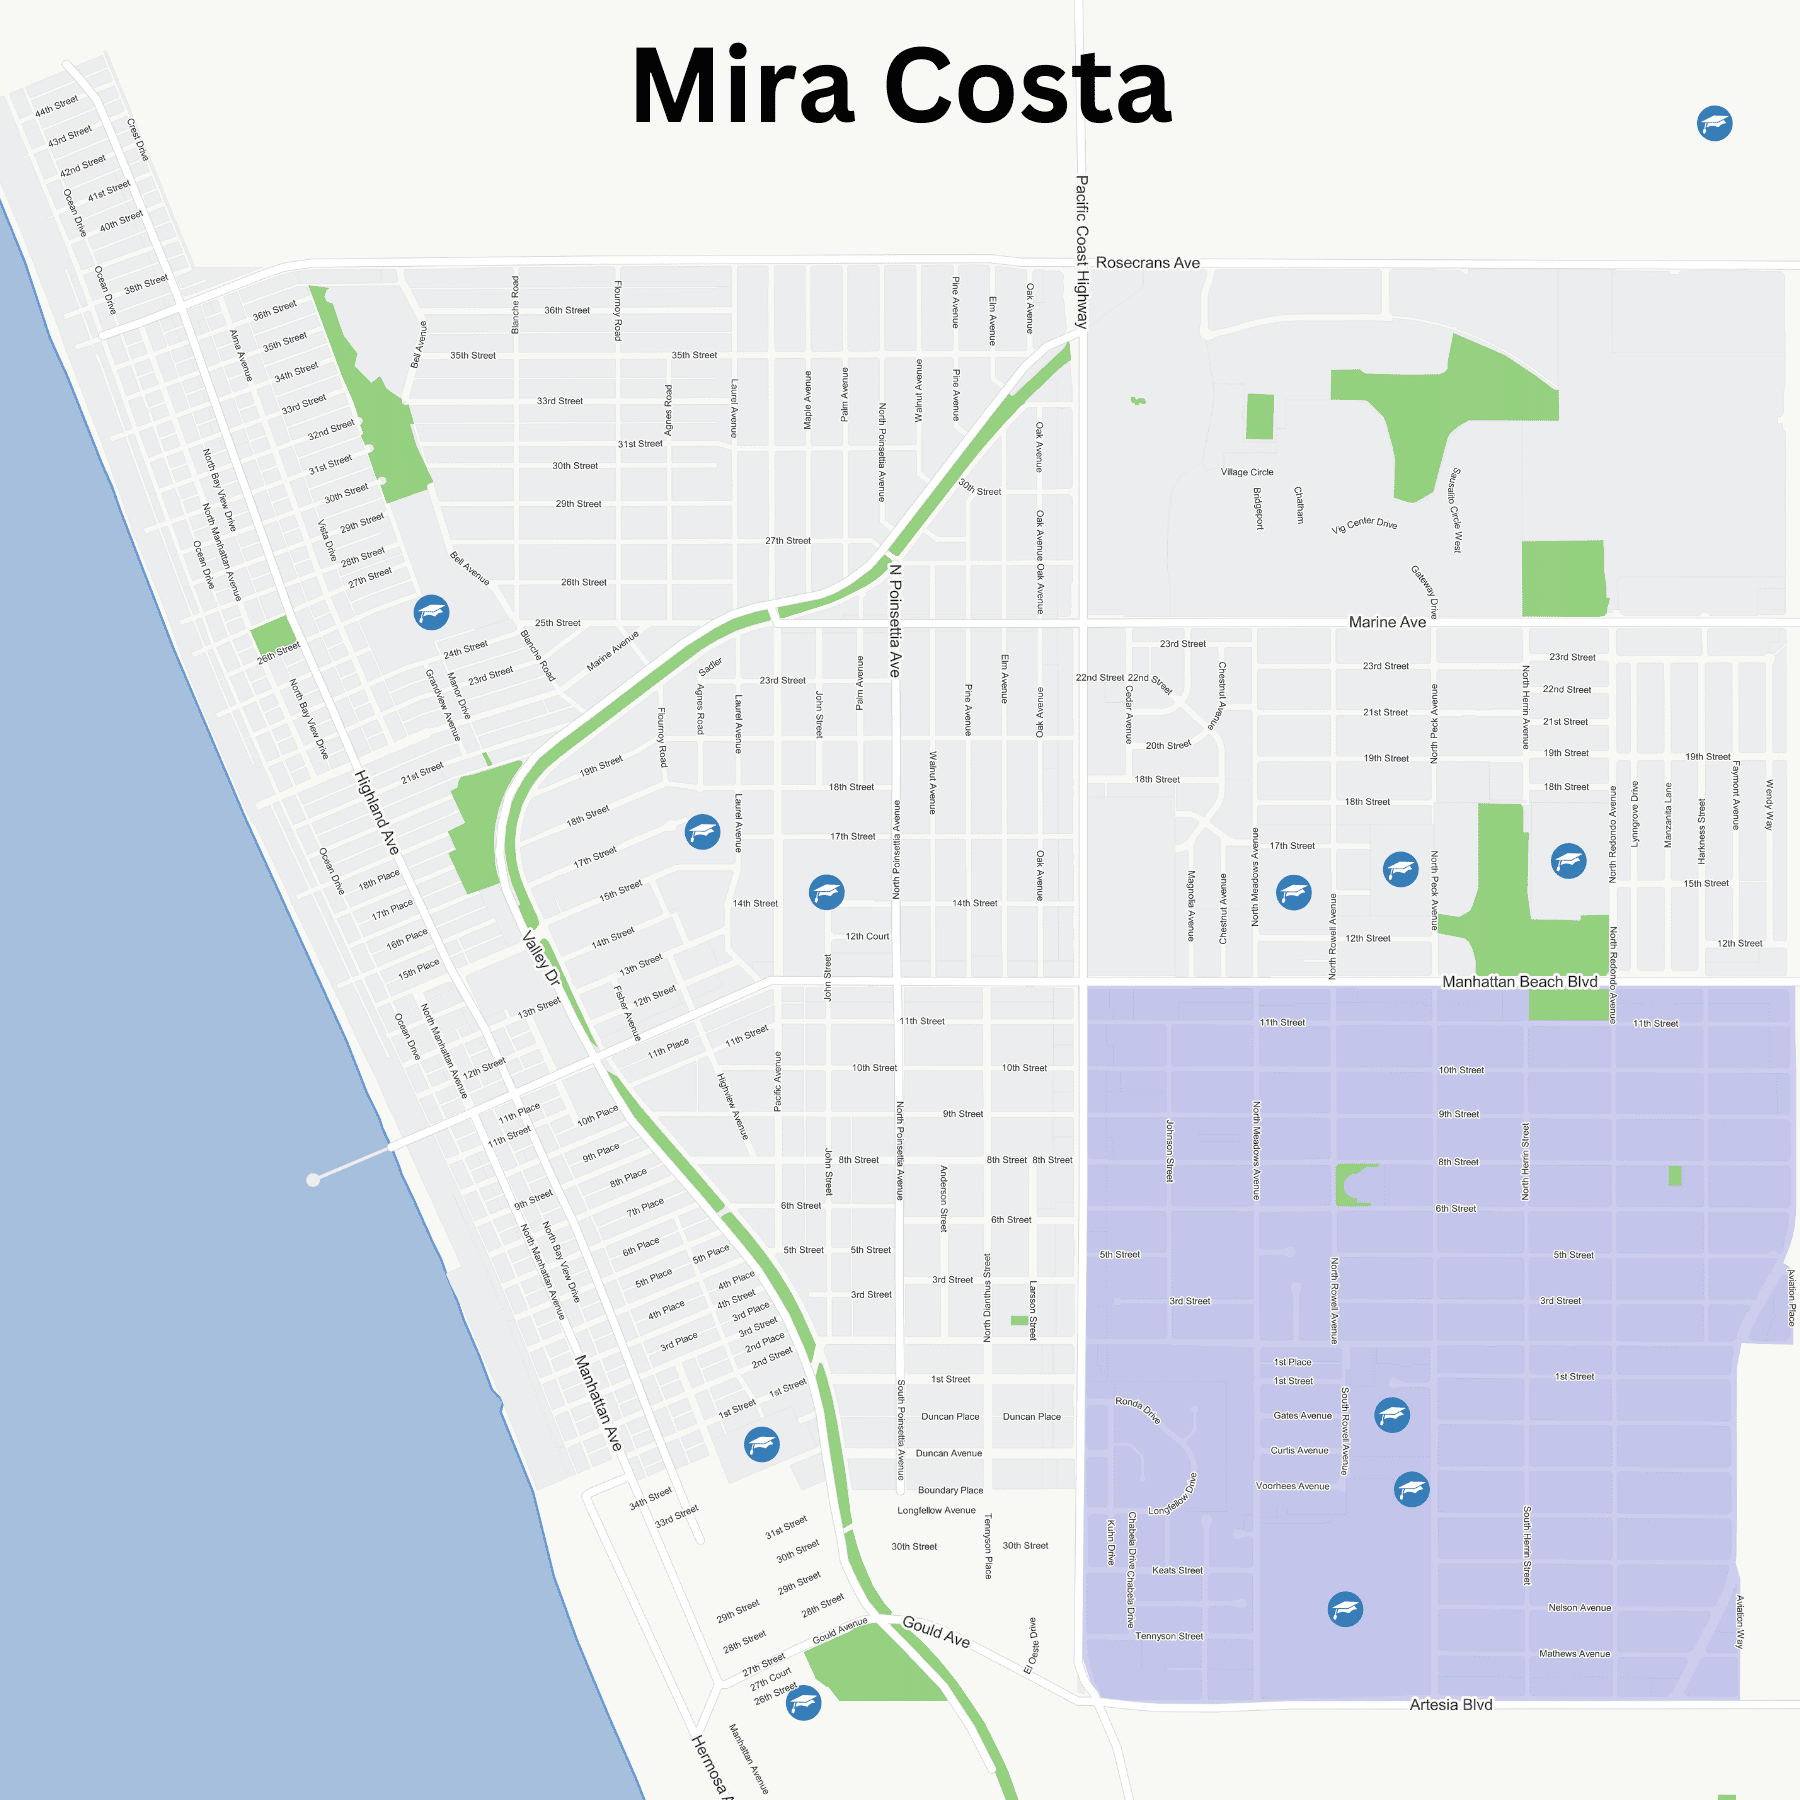 Mira Costa